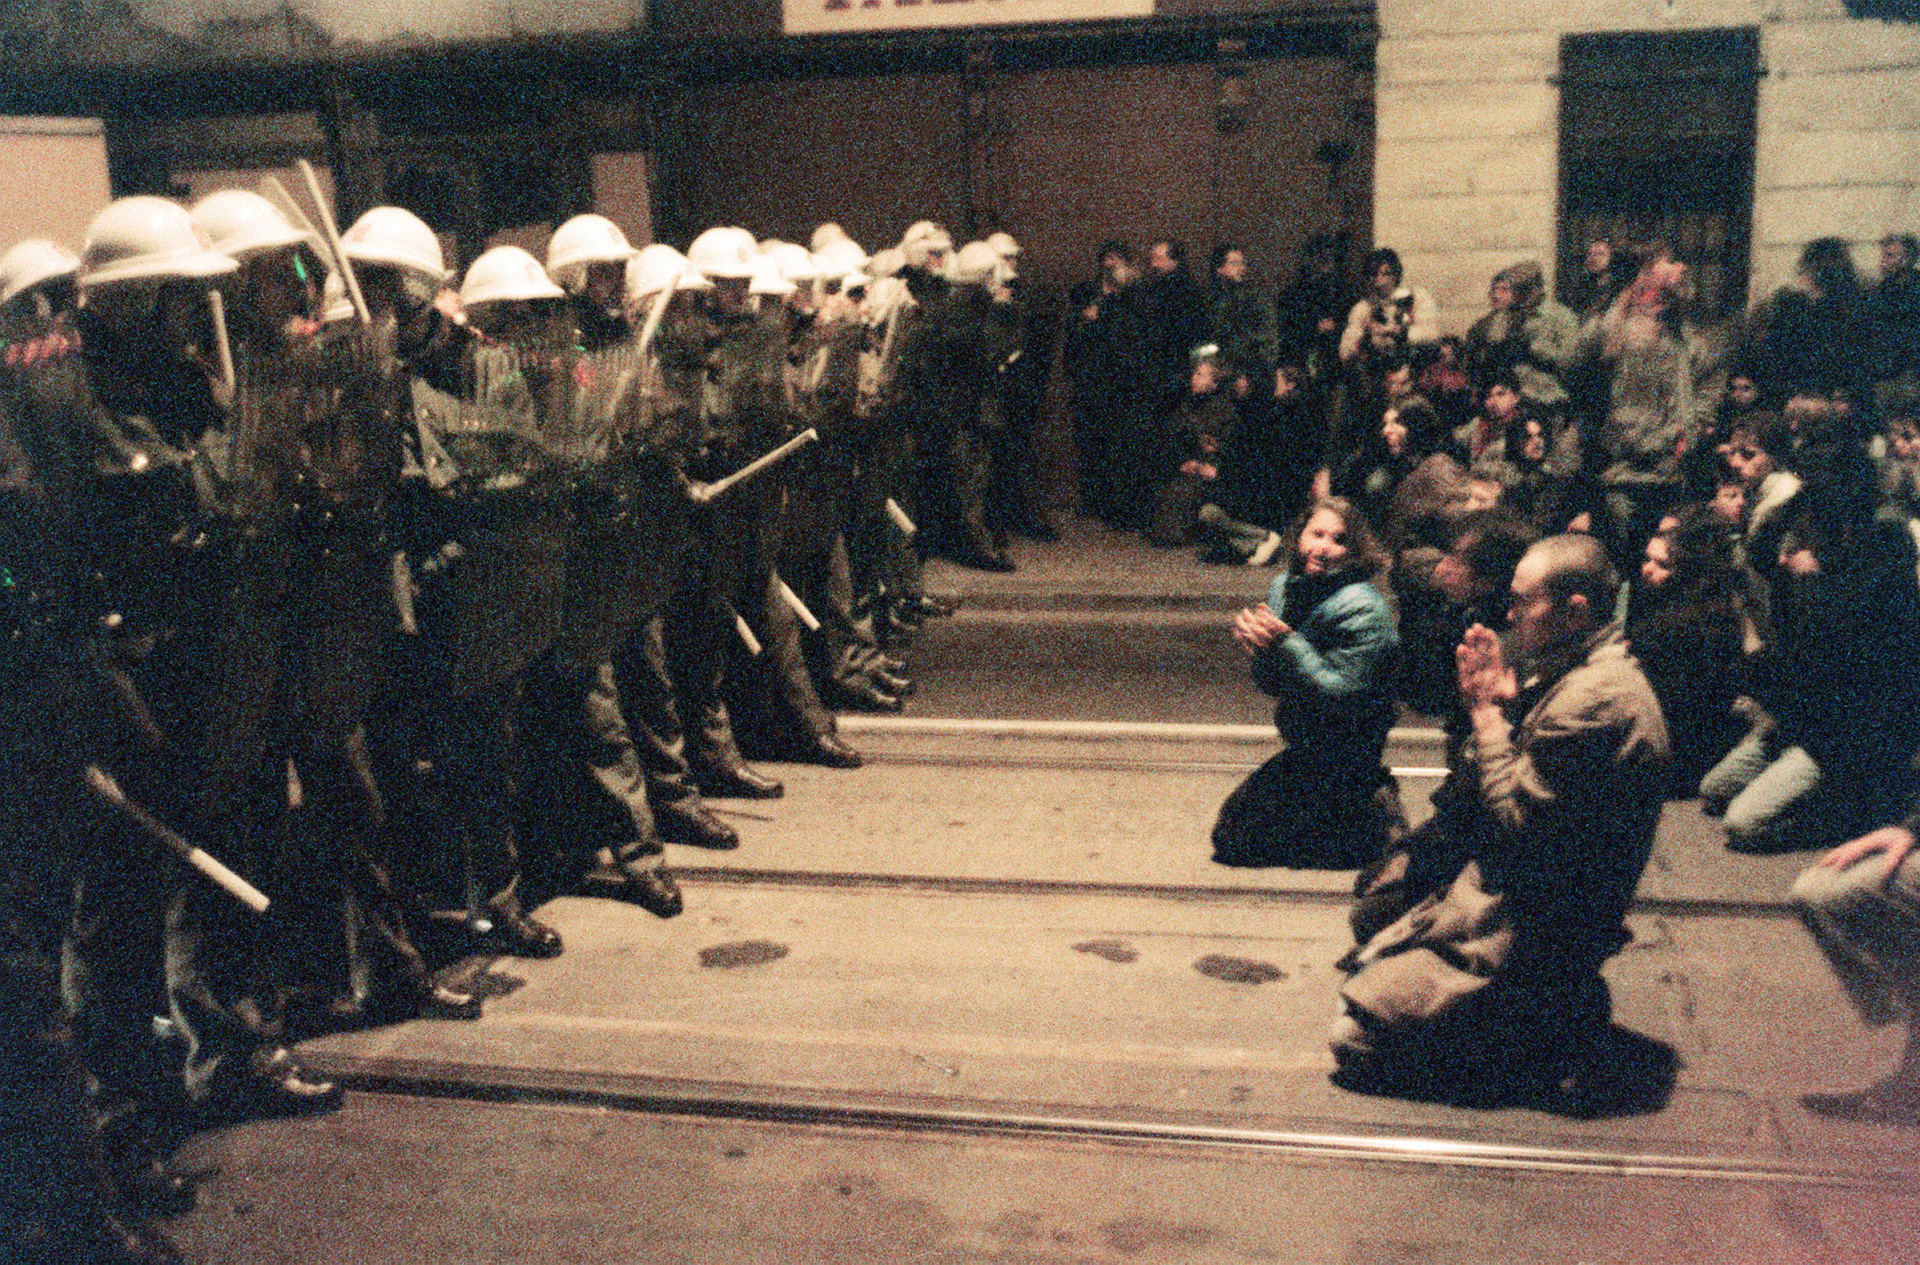 Studenti na Národní třídě 17. listopadu 1989